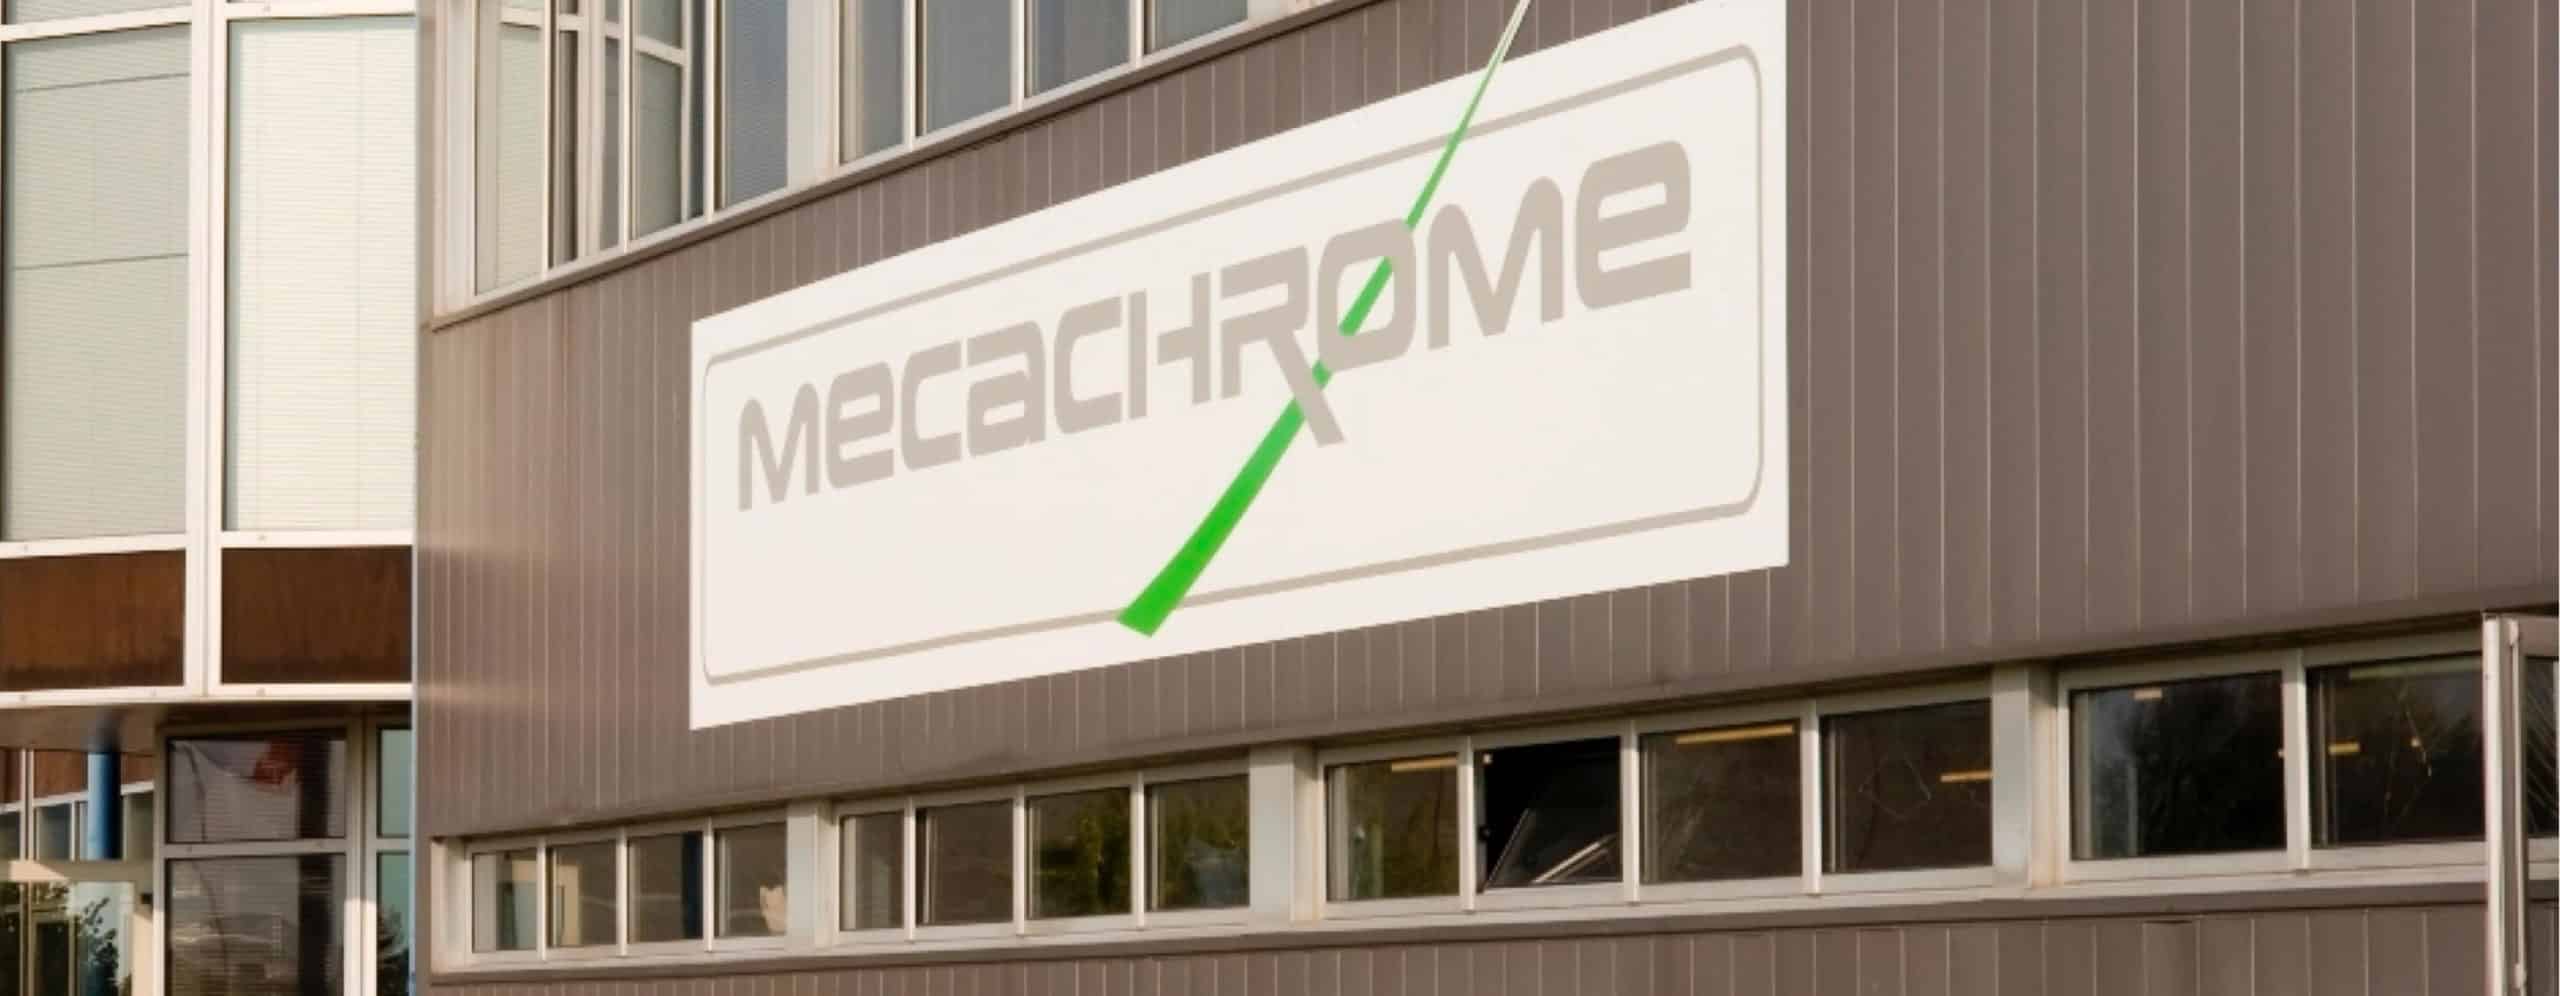 Panneau Mecachrome bâtiment